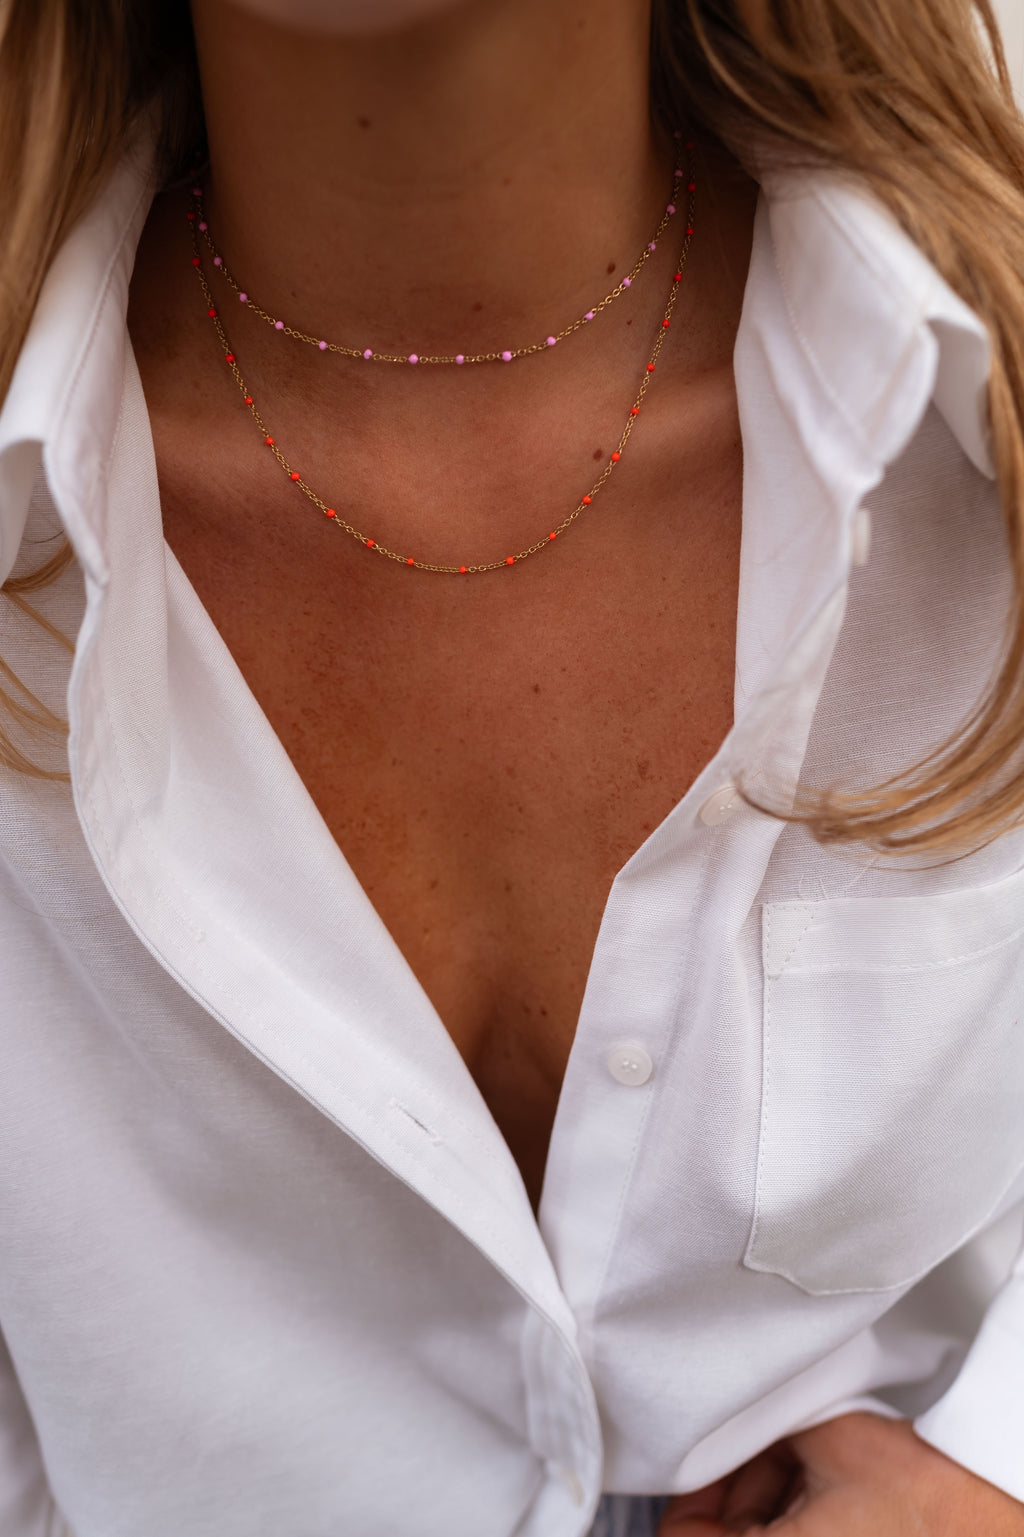 Mary necklace - orange